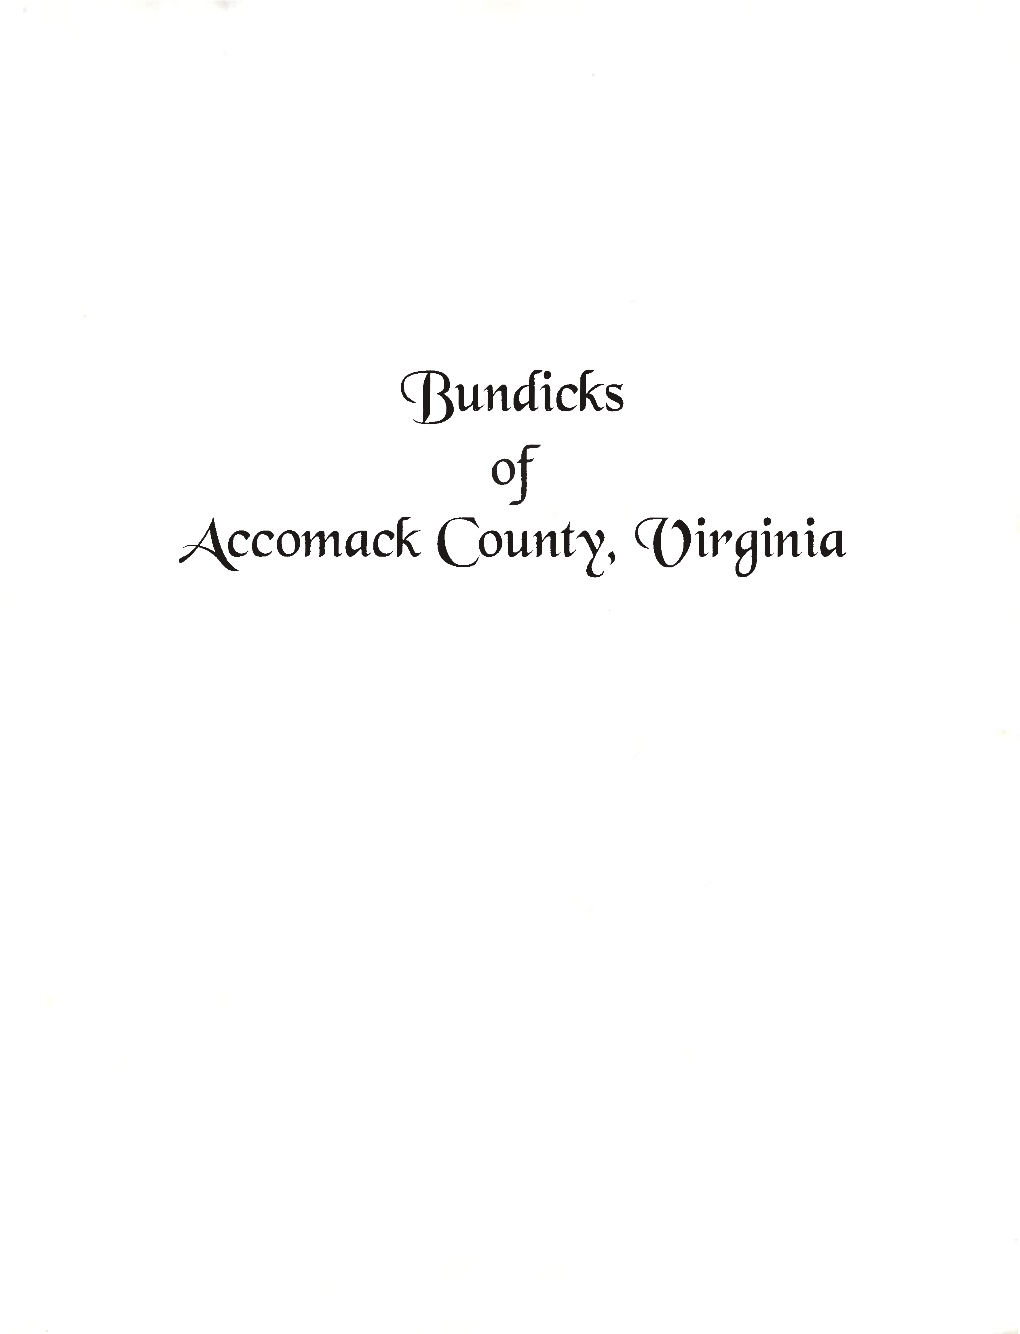 Ci3undicks of Accomack County, Coirginia BUN DICKS of ACCOMACK COUNTY VIRGINIA